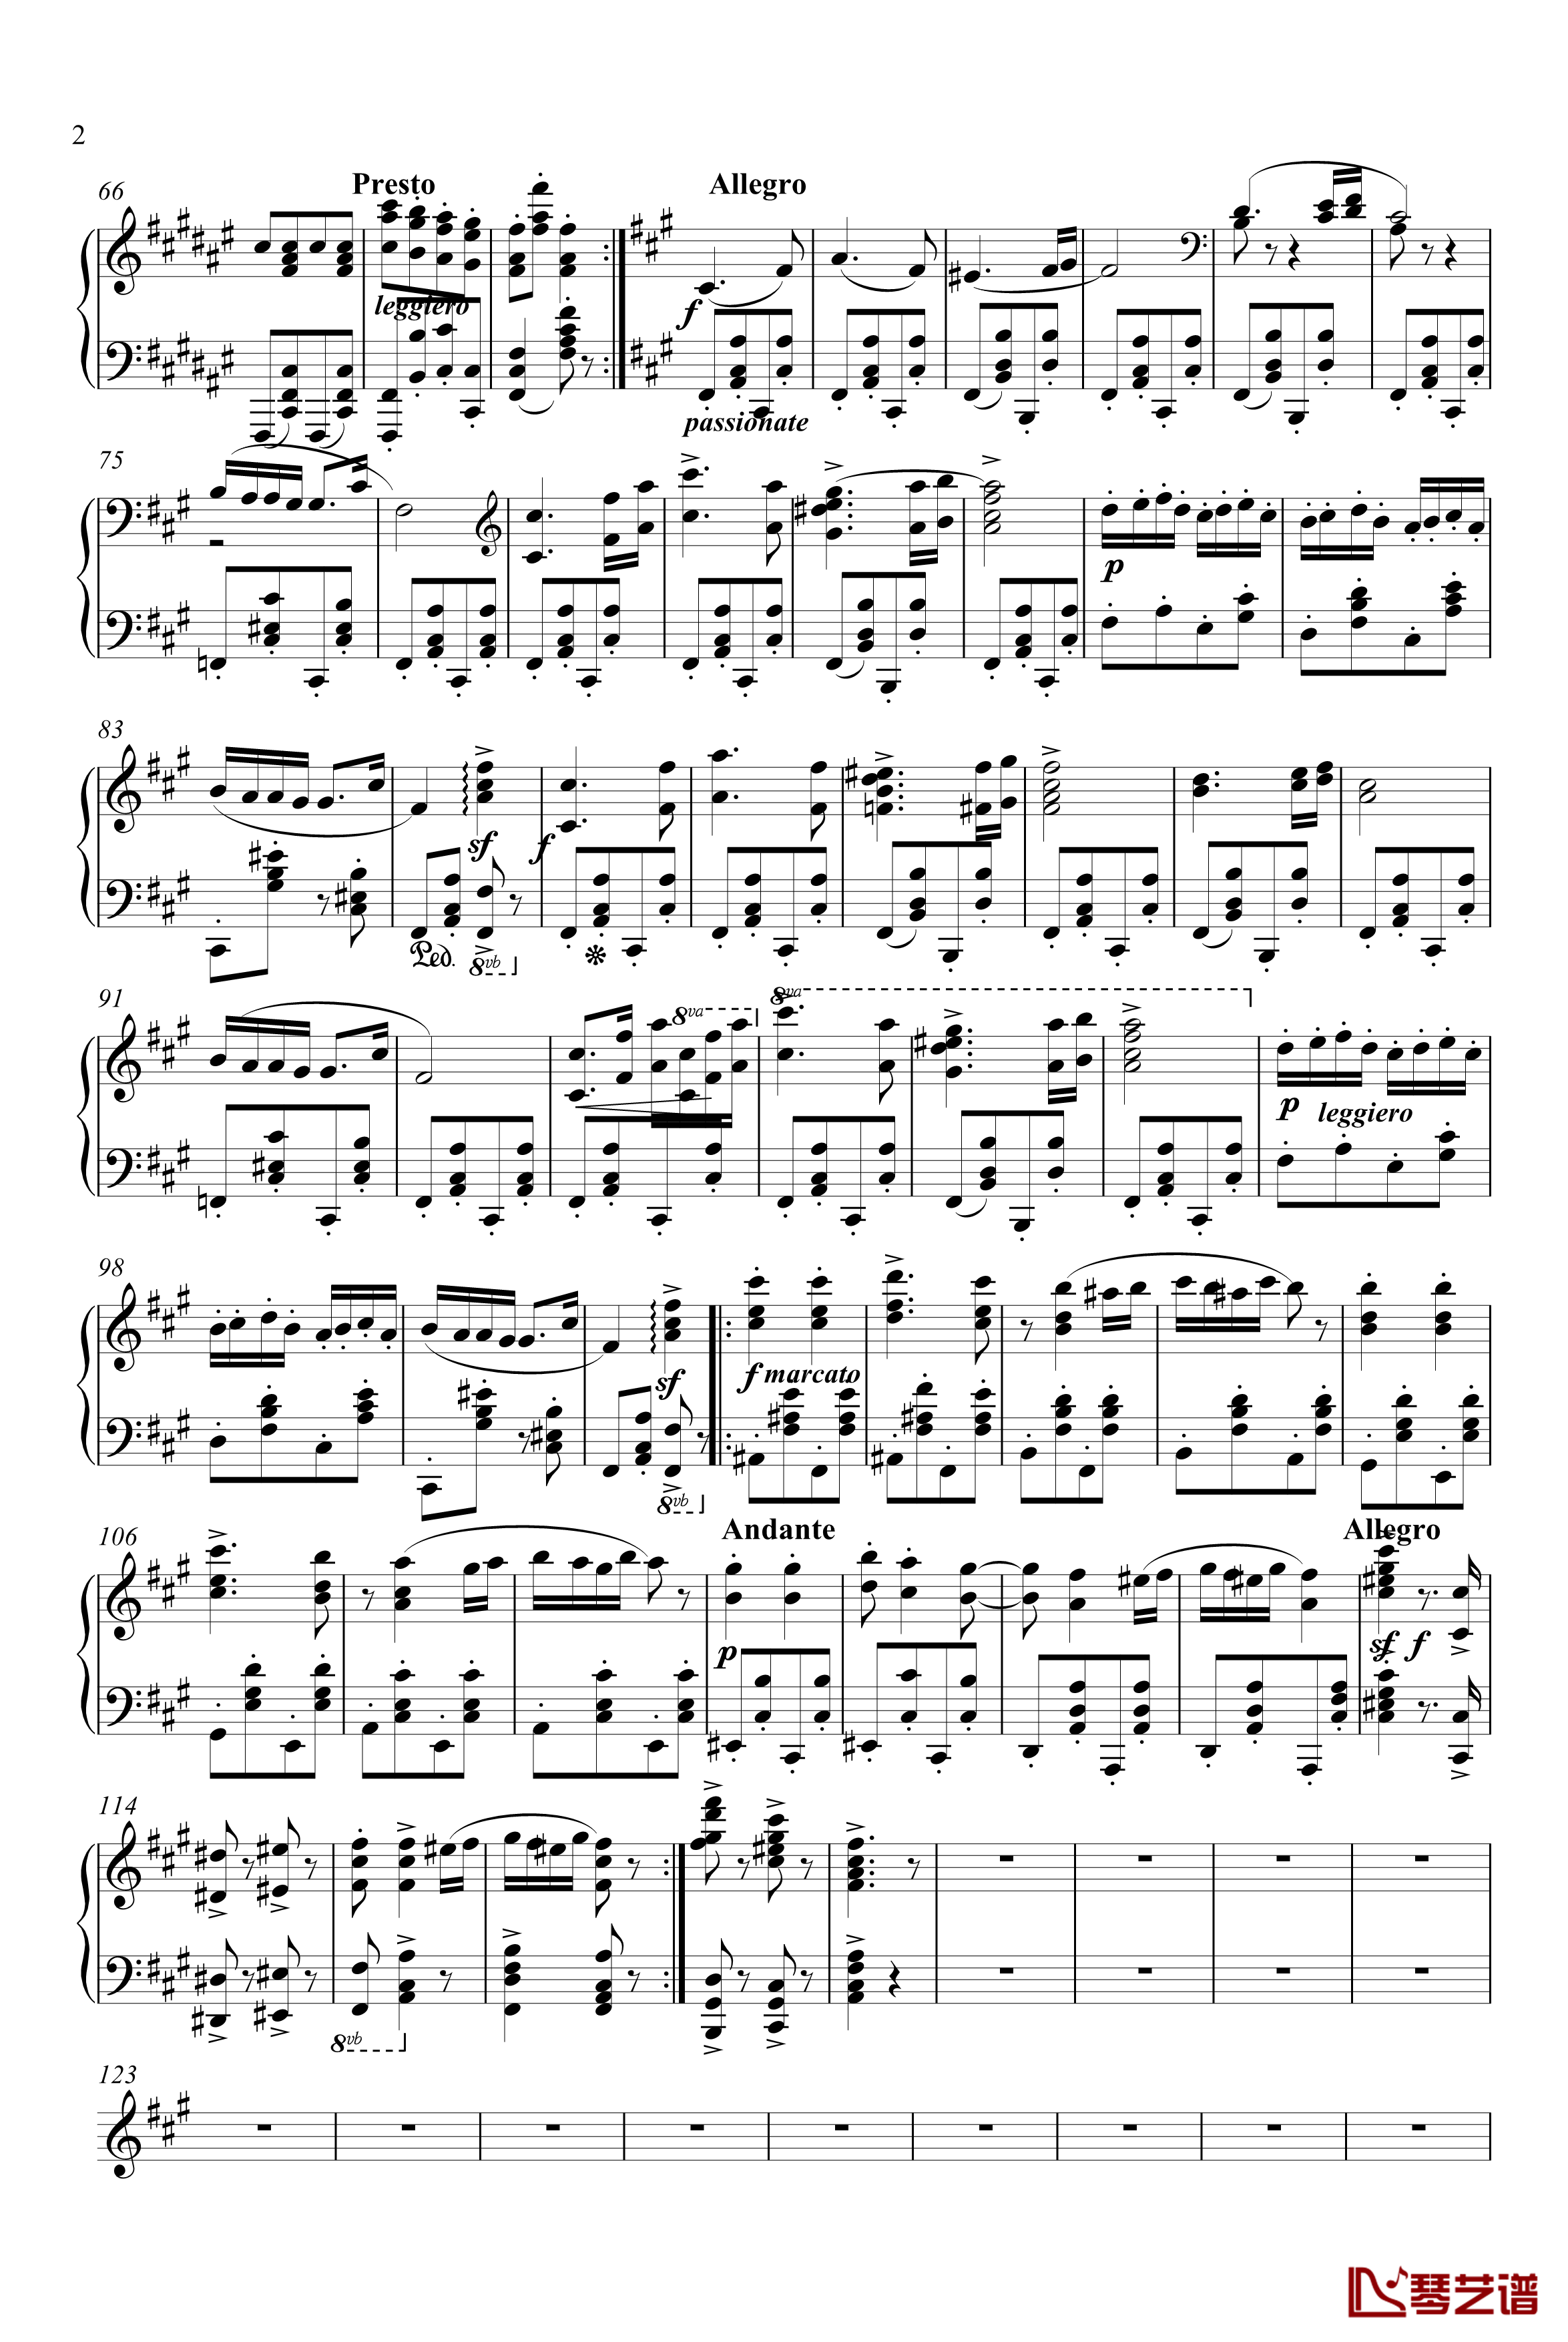 匈牙利舞曲第五号钢琴钢琴谱-独奏版-勃拉姆斯-Brahms